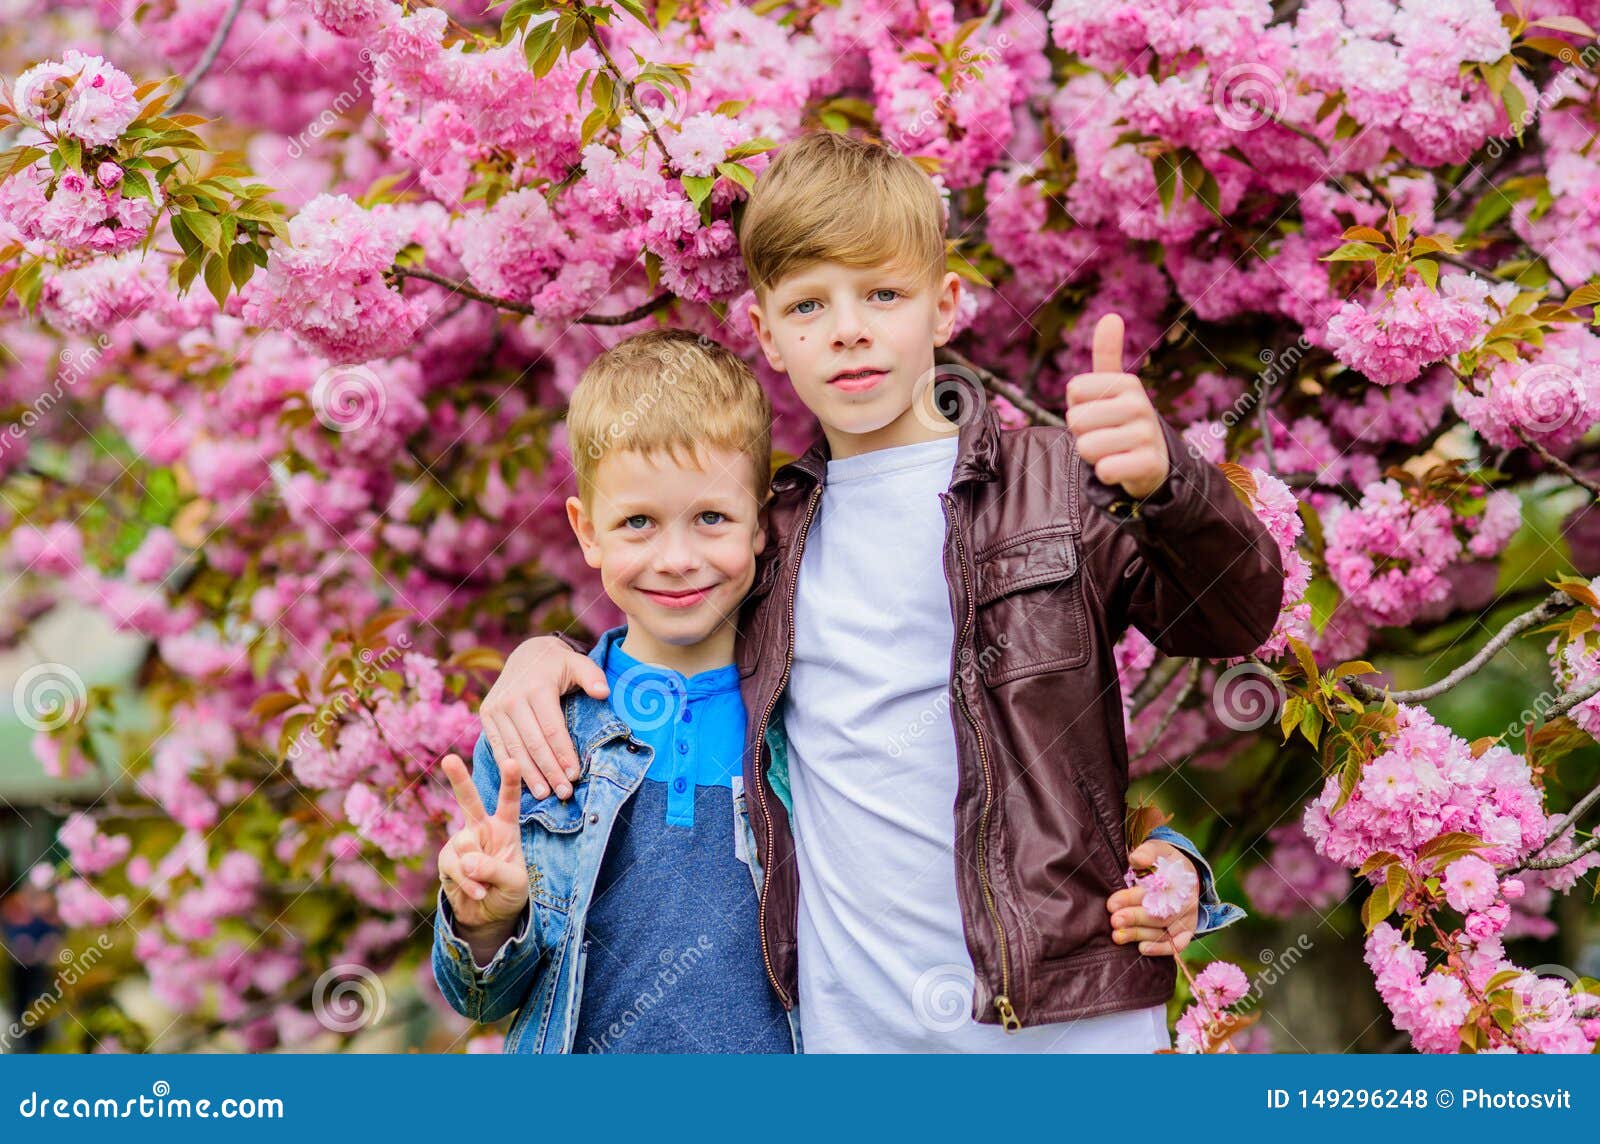 愉快的春天假日r 摆在佐仓附近的男孩孩子反弹佐仓树桃红色花库存照片 图片包括有摆在佐仓附近的男孩 愉快的春天假日